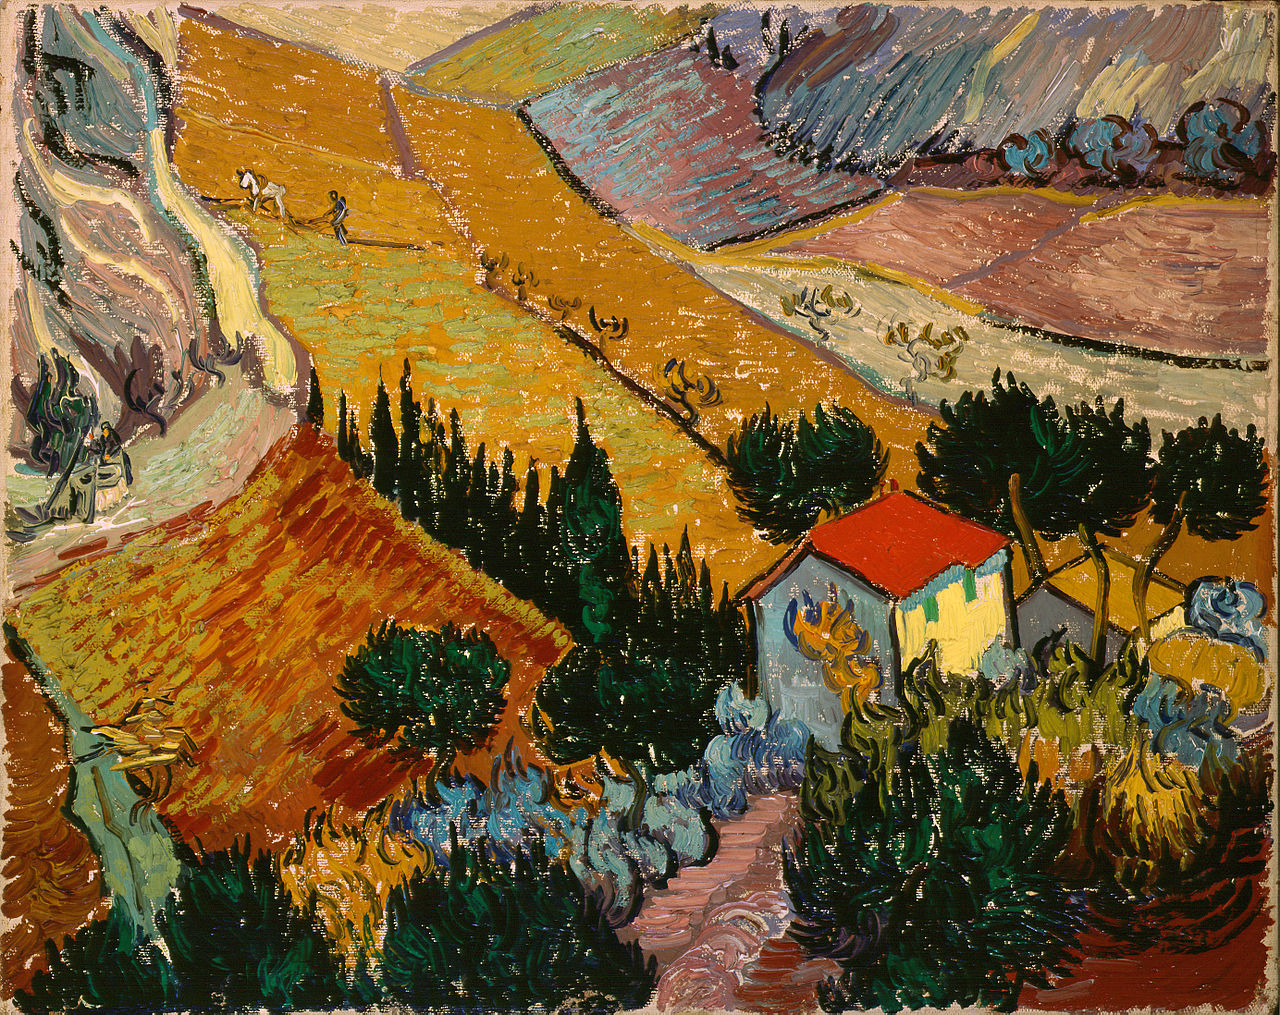 Landschaft mit Haus und Pflüger by Vincent van Gogh - 1889 - 33 x 41.4 cm Hermitage Museum